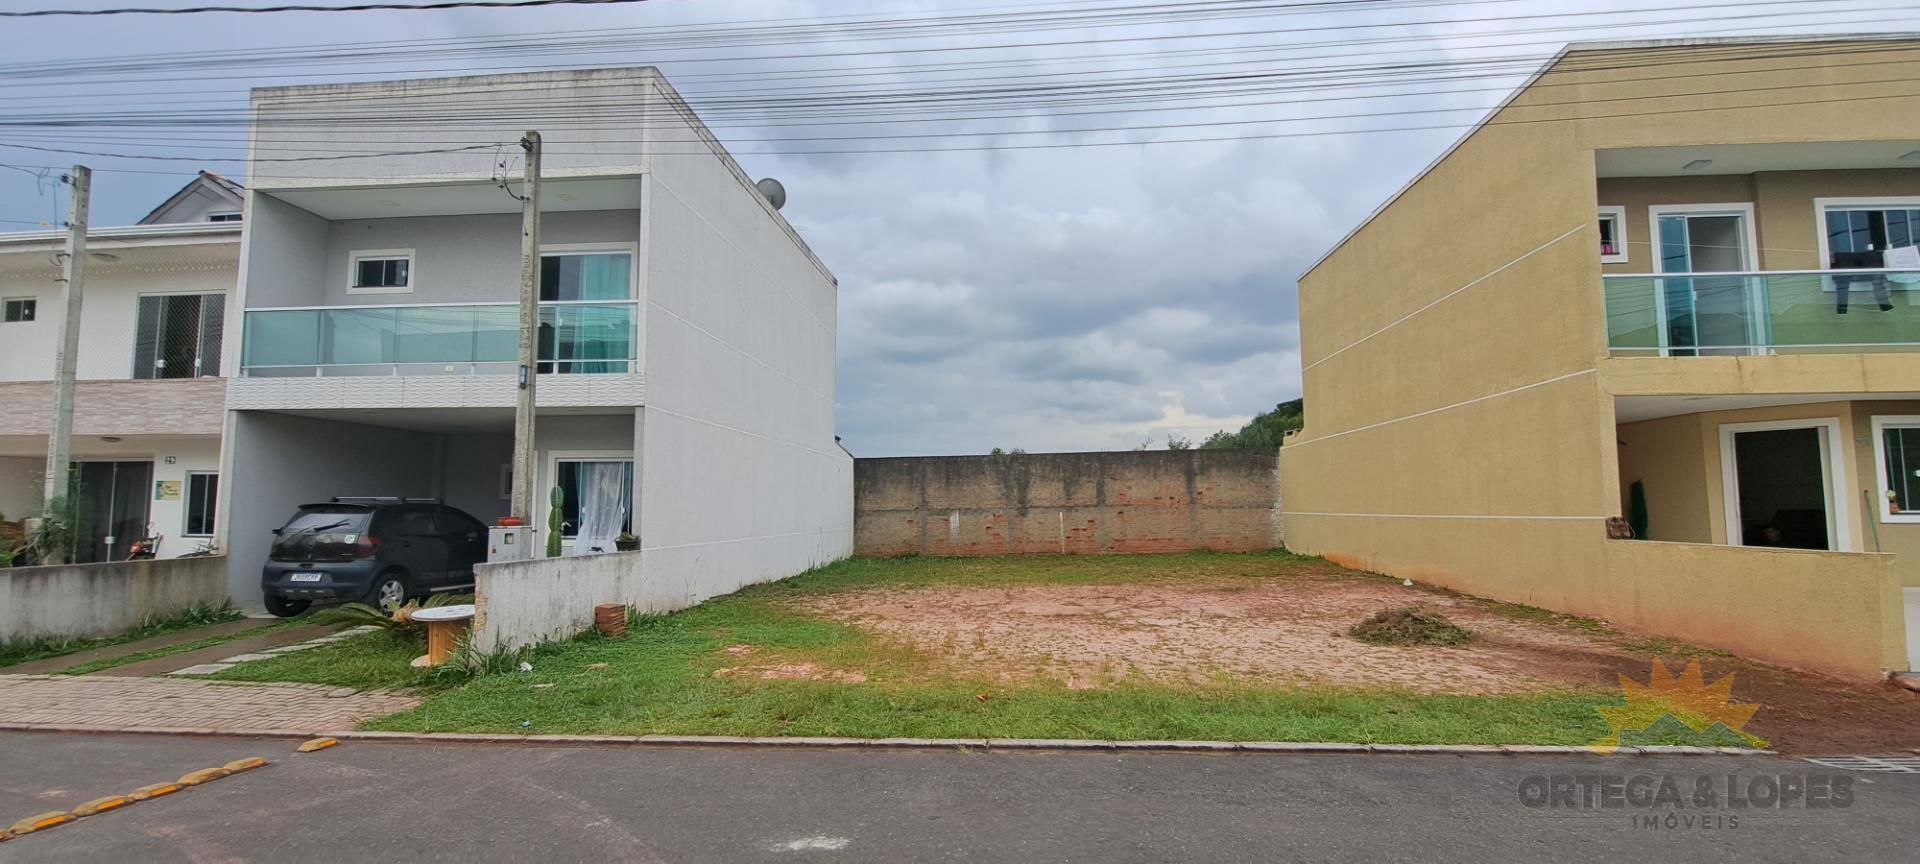 Terreno para venda no Tatuquara em Curitiba com 90m² por R$ 140.000,00